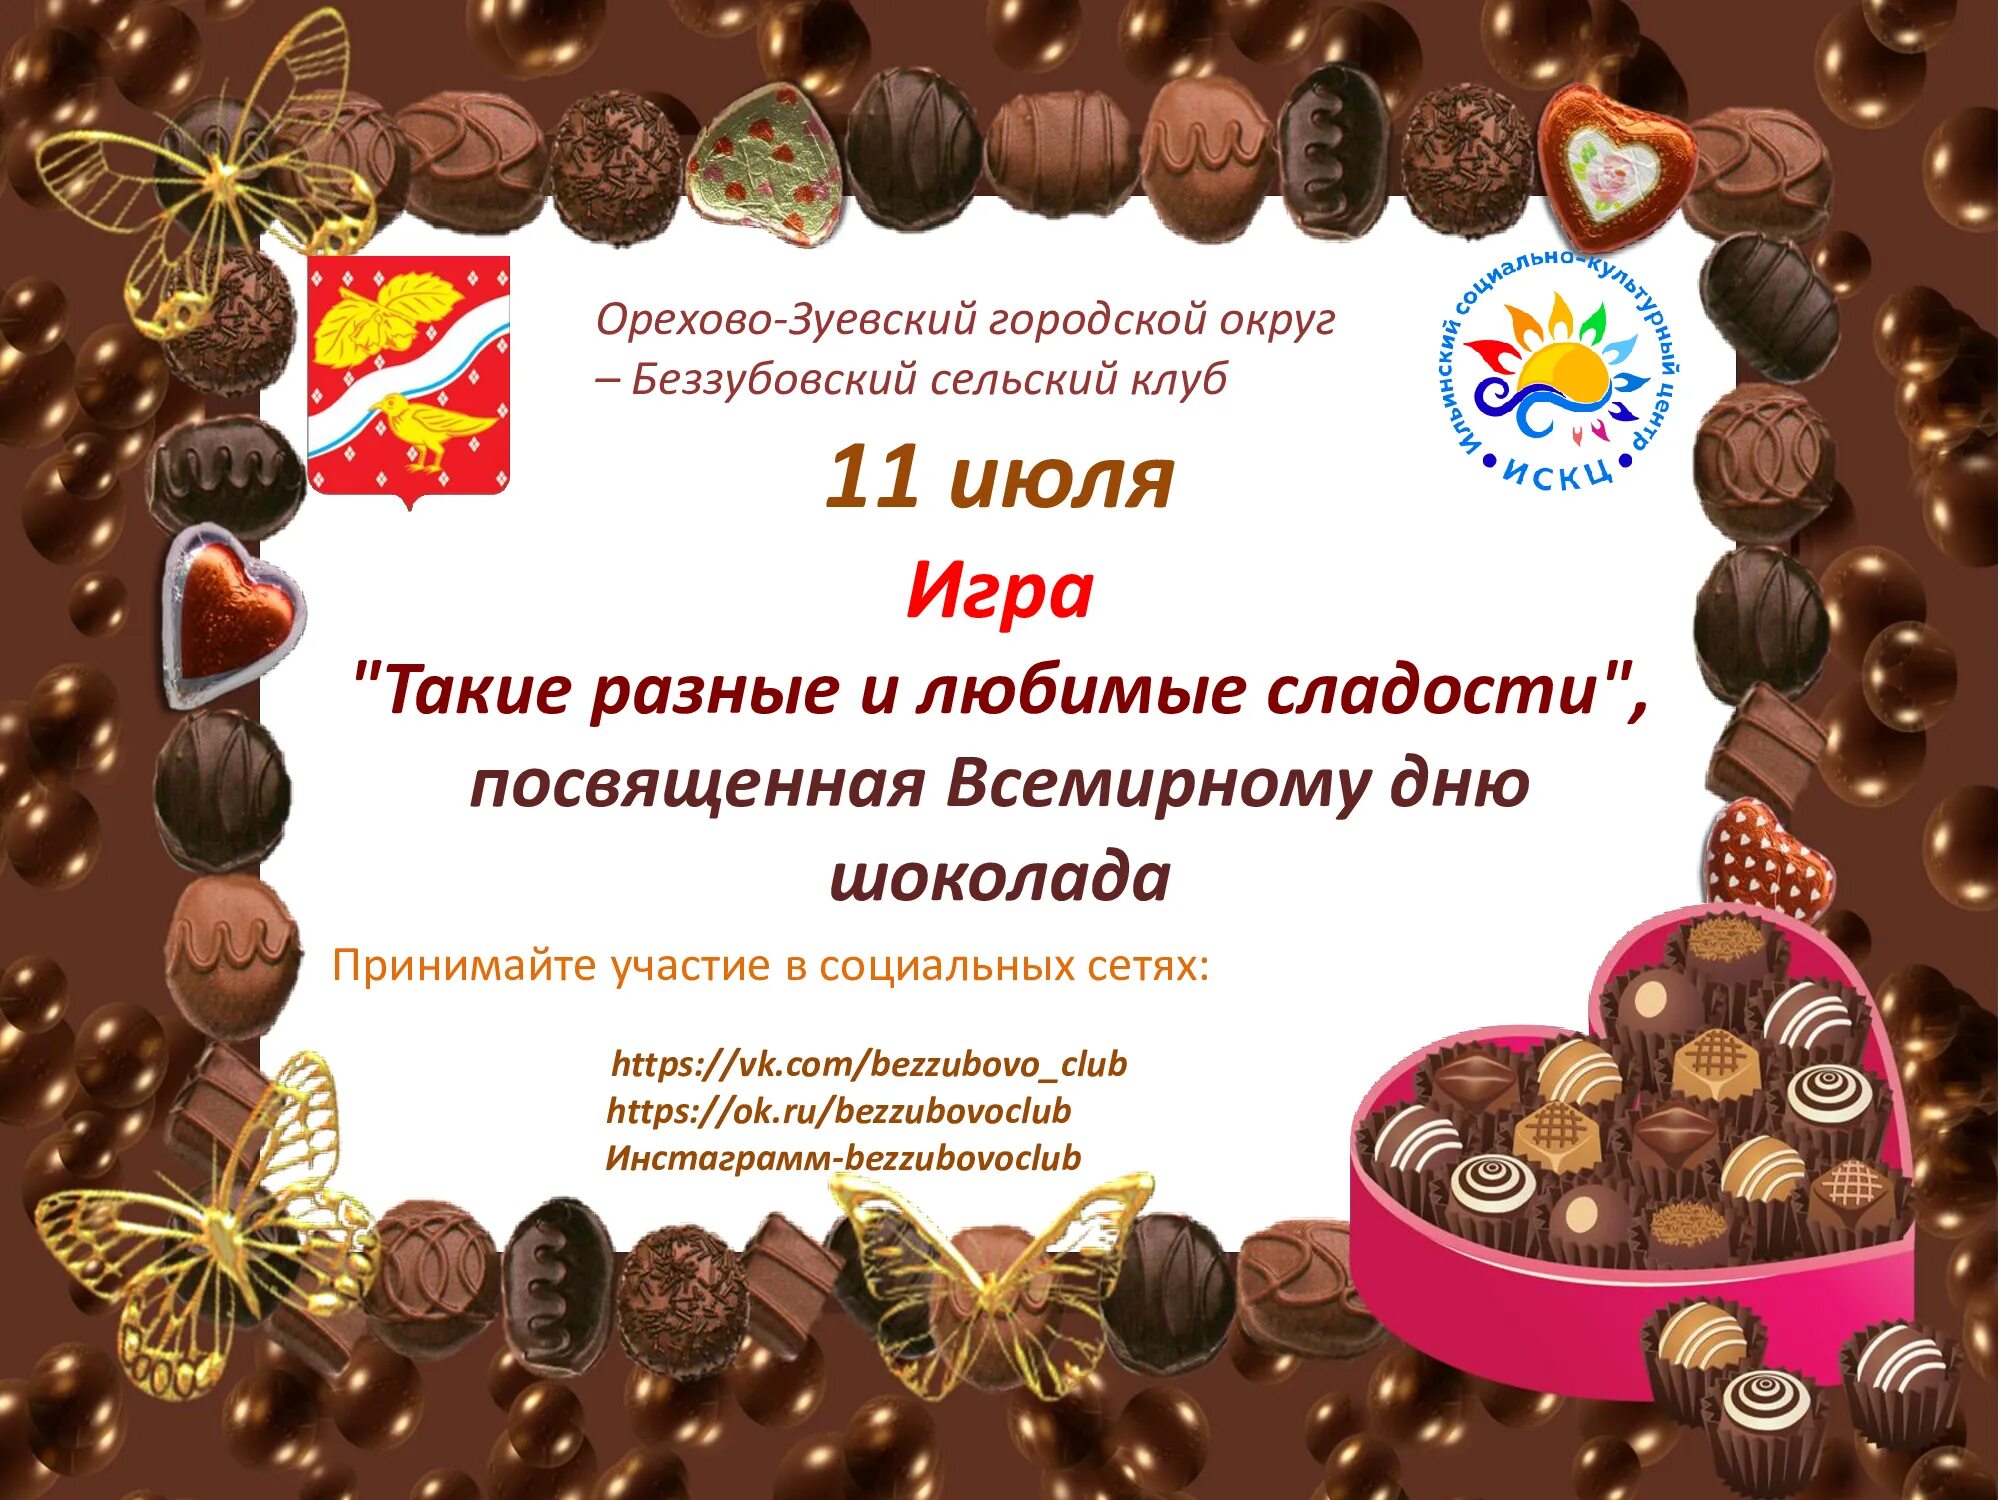 Шоколад афиша. Мероприятия ко Дню шоколада. День шоколада. Всемирный день шоколада. День шоколада дети.